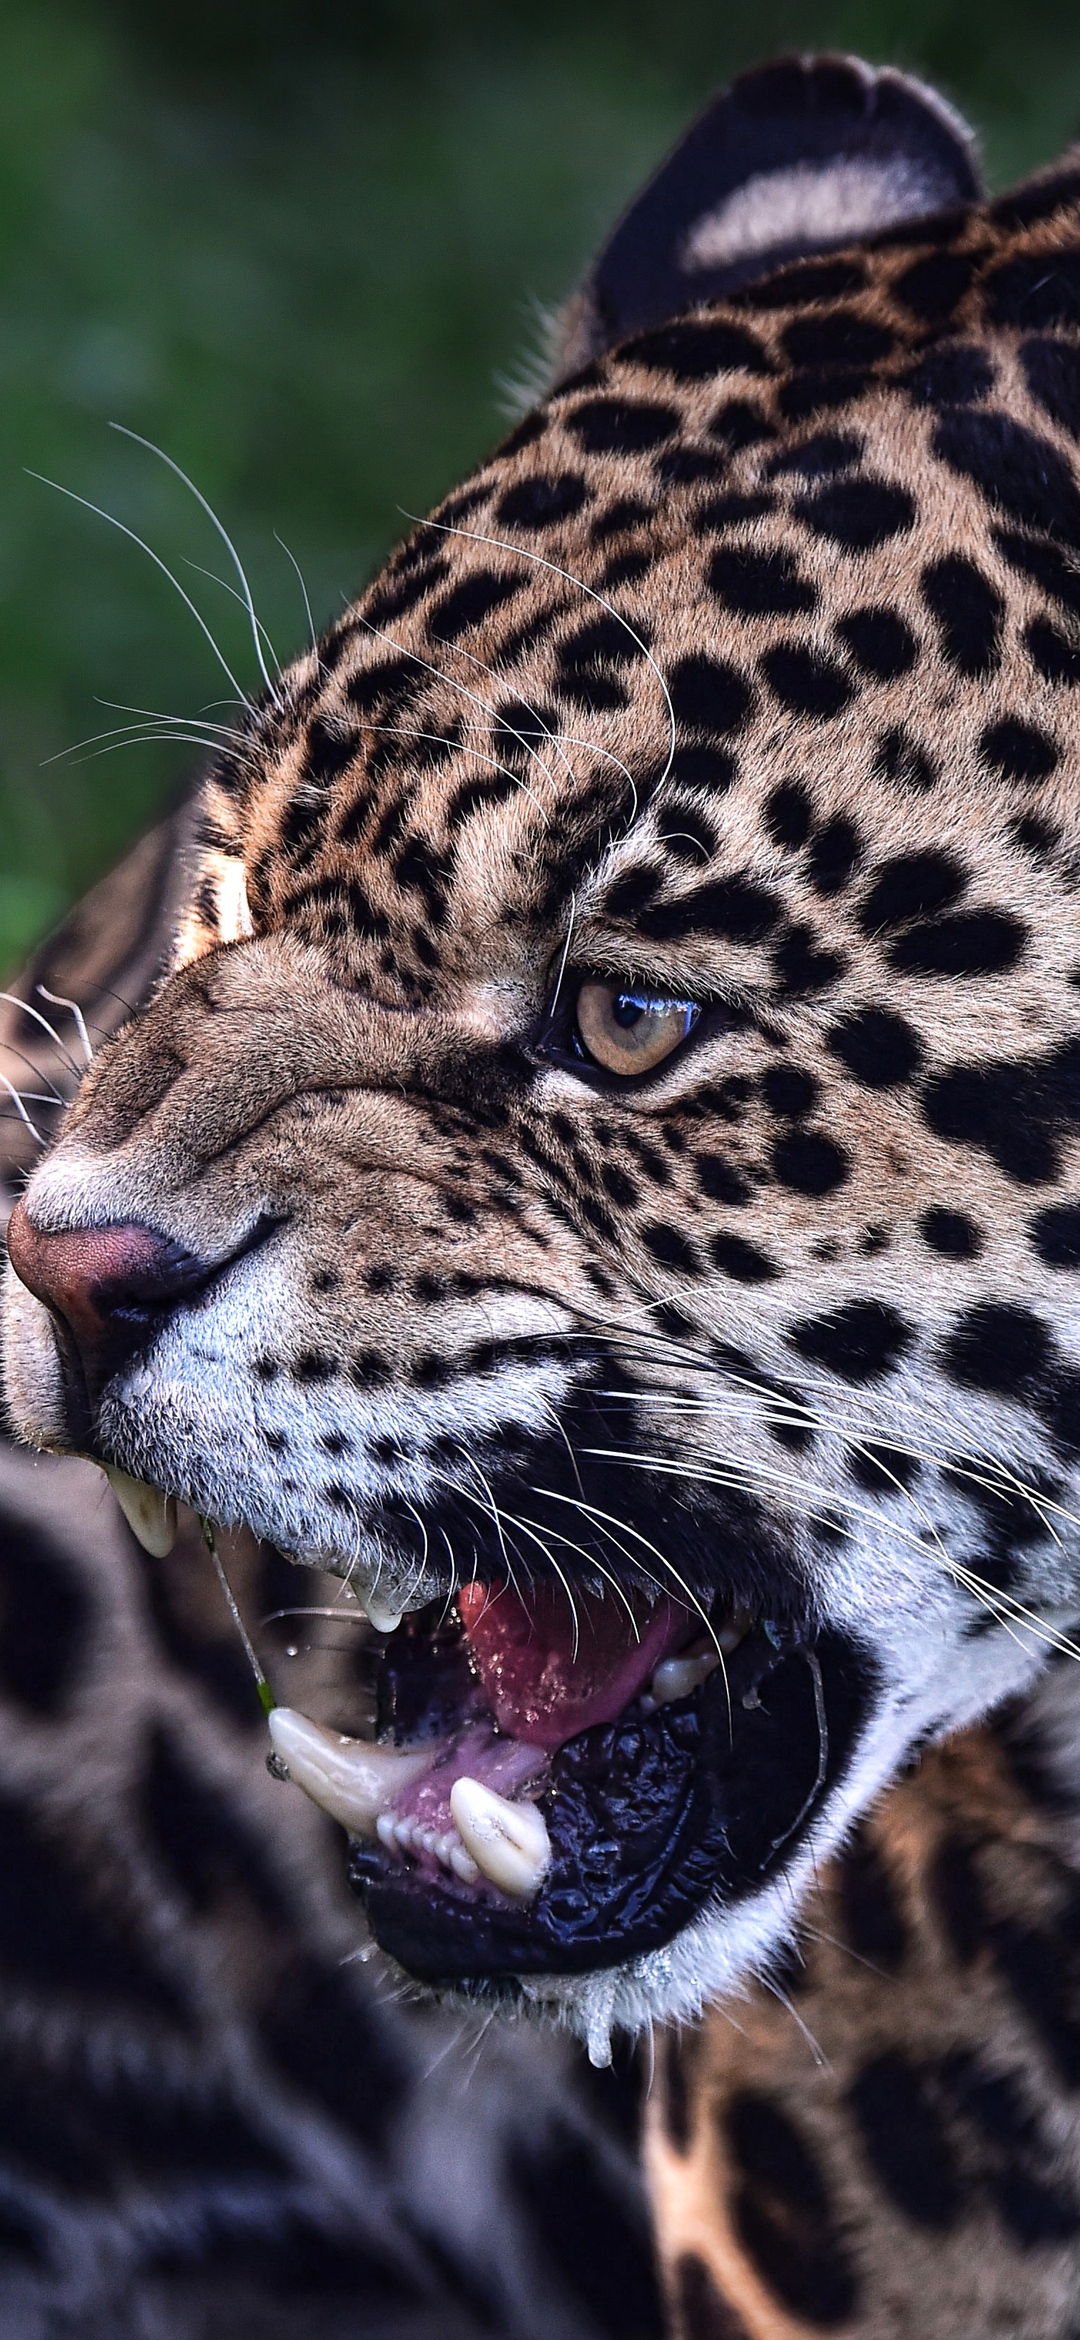 Image: Big cat, Jaguar, predator, grin, canines, spots